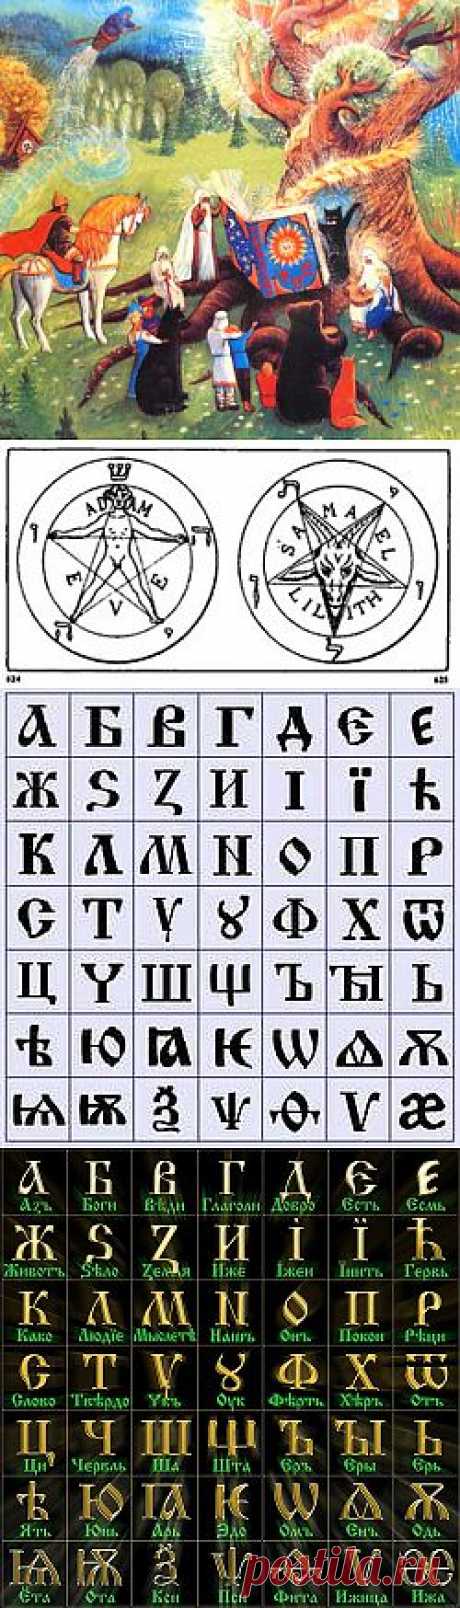 Avega - Древнерусский язык. Забытые Глубинные образы древних буквиц